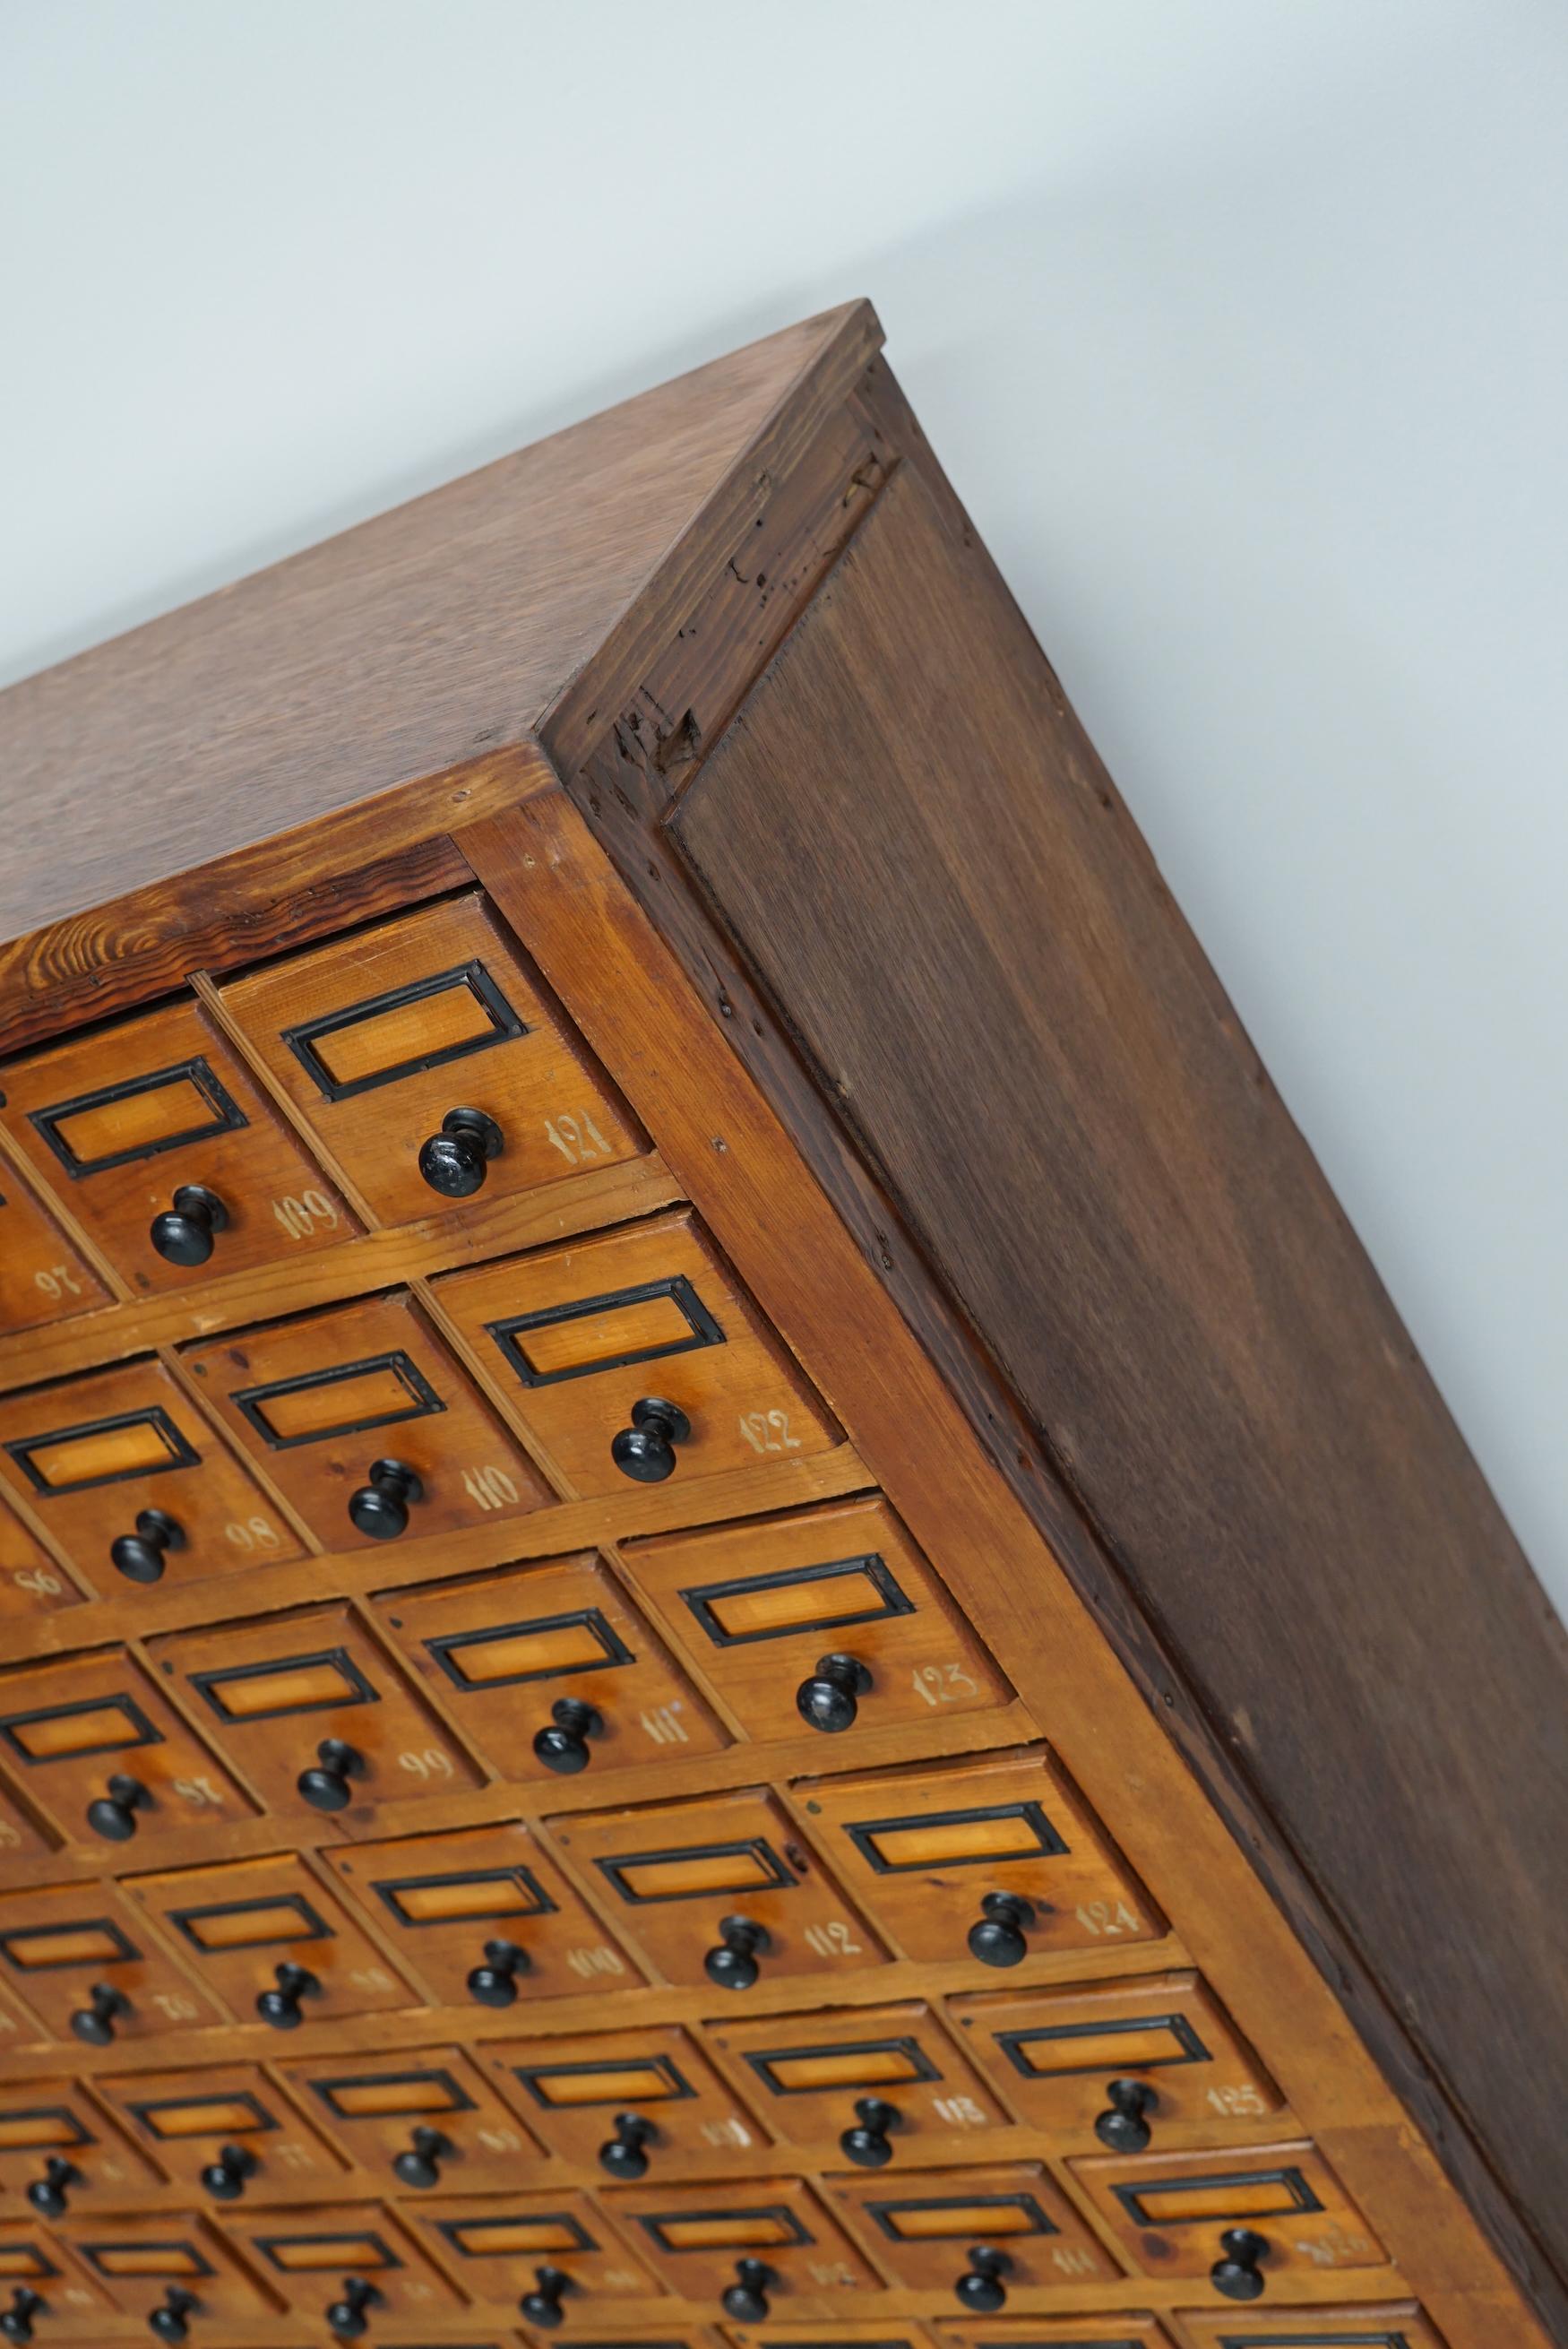 Cette armoire d'atelier a été fabriquée en pin aux Pays-Bas vers les années 1930 et a été utilisée dans un atelier pour l'équipement d'un dentiste. Il comporte de nombreux tiroirs avec de petits boutons et des porte-cartes. Les dimensions